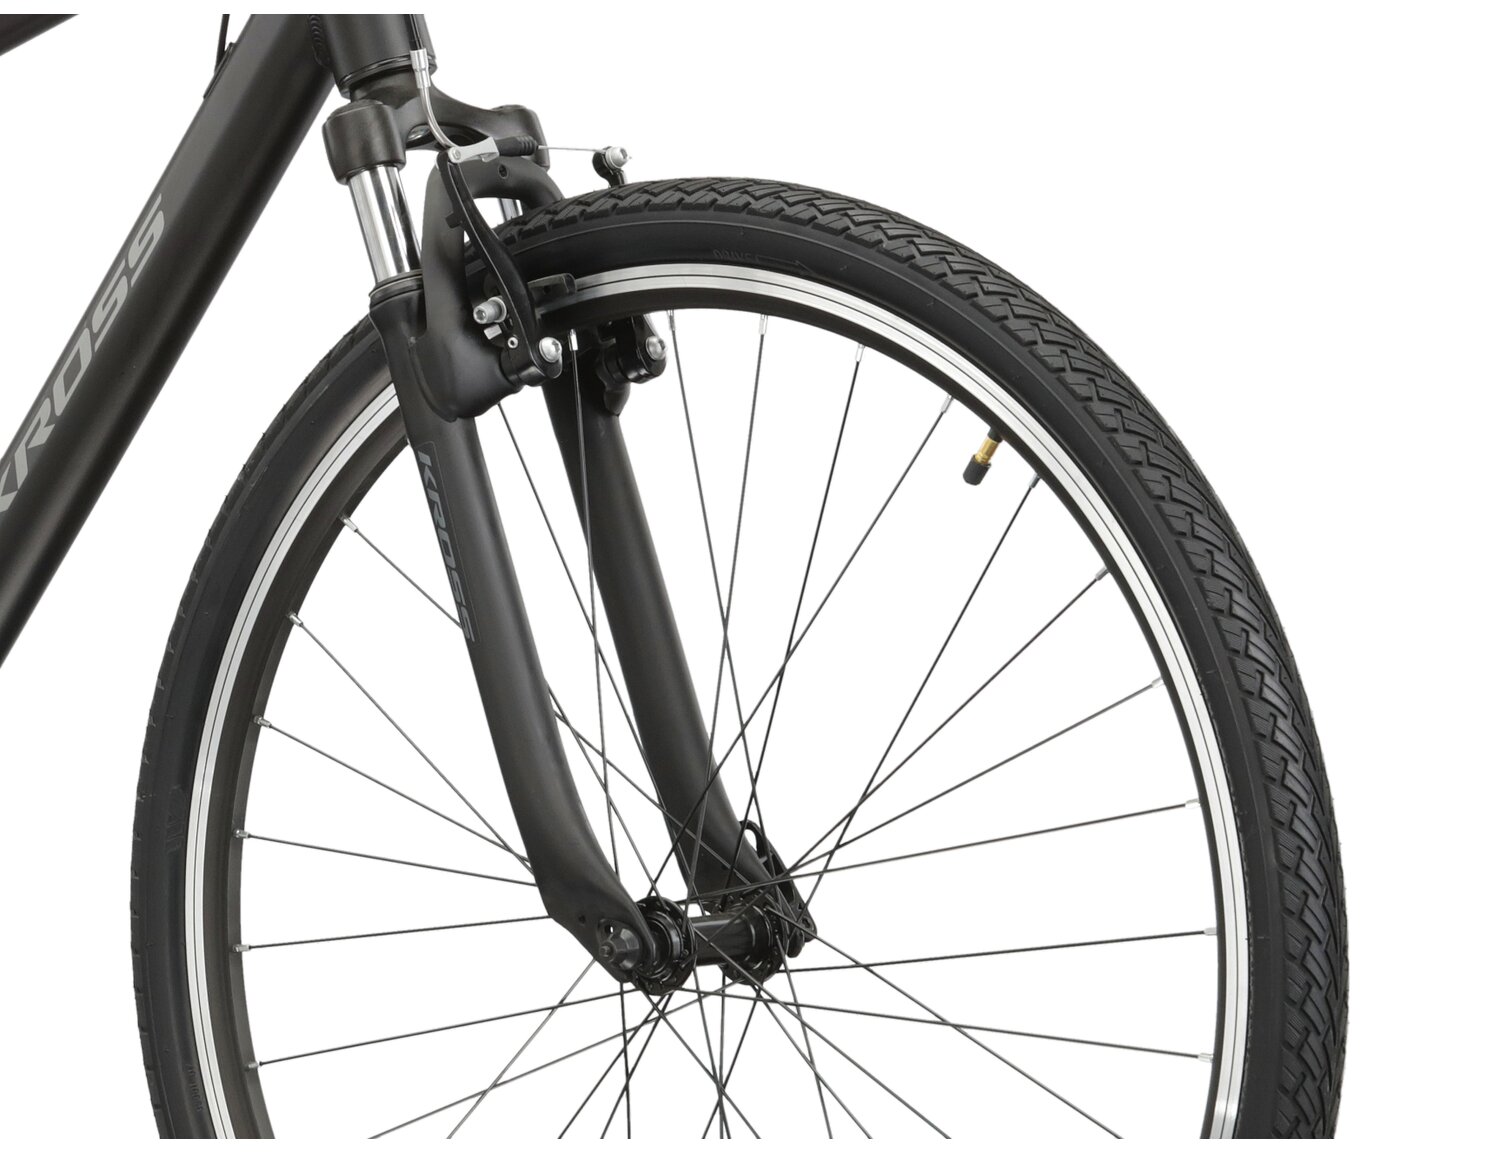 Aluminowa rama, amortyzowany widelec oraz opony Wanda w rowerze crossowym KROSS Evado 1.0 